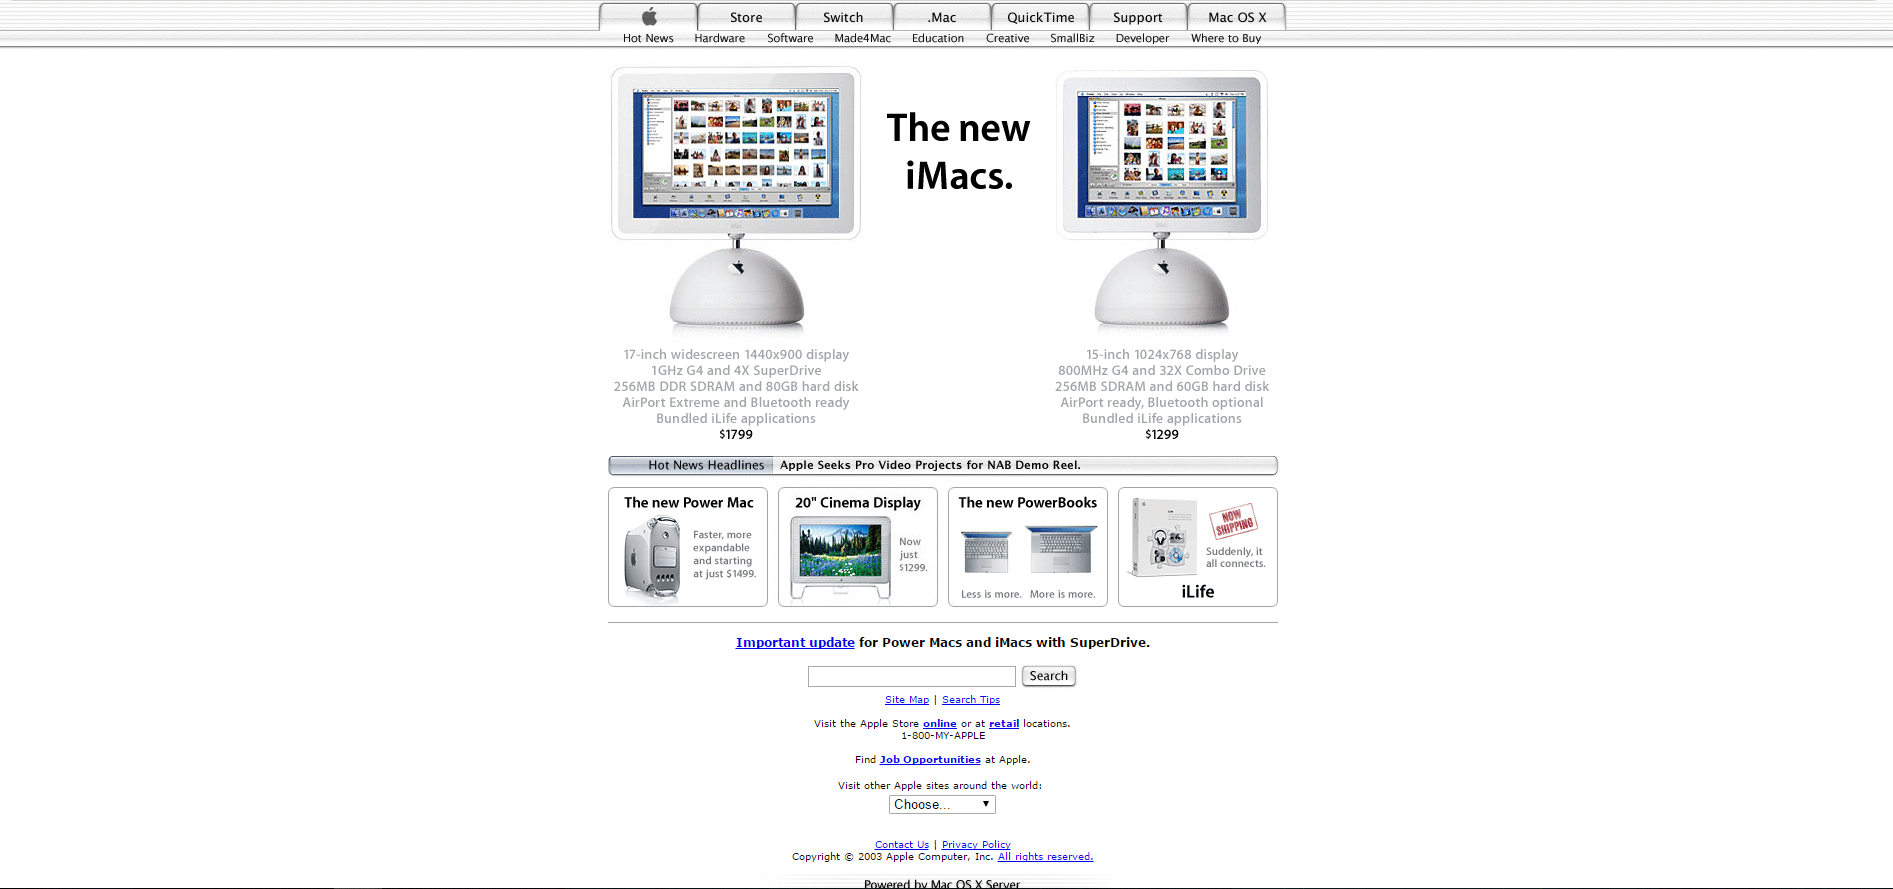 Website Design for apple.com in 2003